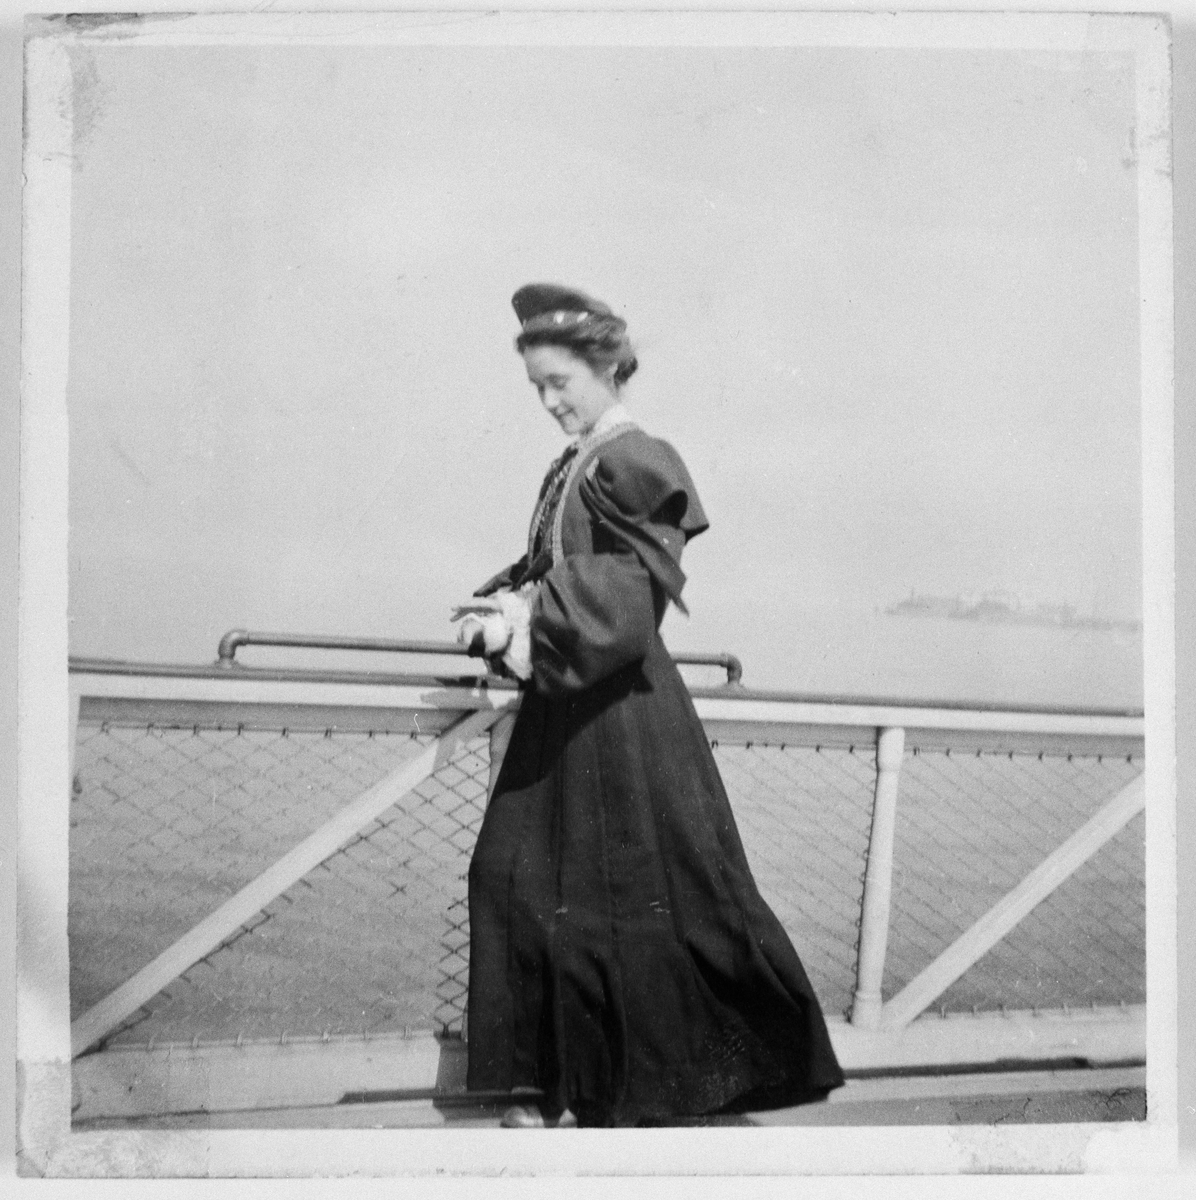 ”Ingeborg Johnsson, gift Frankmar, emigrerade till Amerika 1901, när hon var 17 år. Ingeborg var folkskollärardotter från Köinge,  i Halland. Hon ville gå i folkhögskola, men familjen hade inte råd, därför emigrerade hon. Ingeborg reste med fartyget Ariosto från England och vidare till Amerika med fartyget Ivernia. Efter sex år i Amerika återvände hon hem till Sverige 1907”.